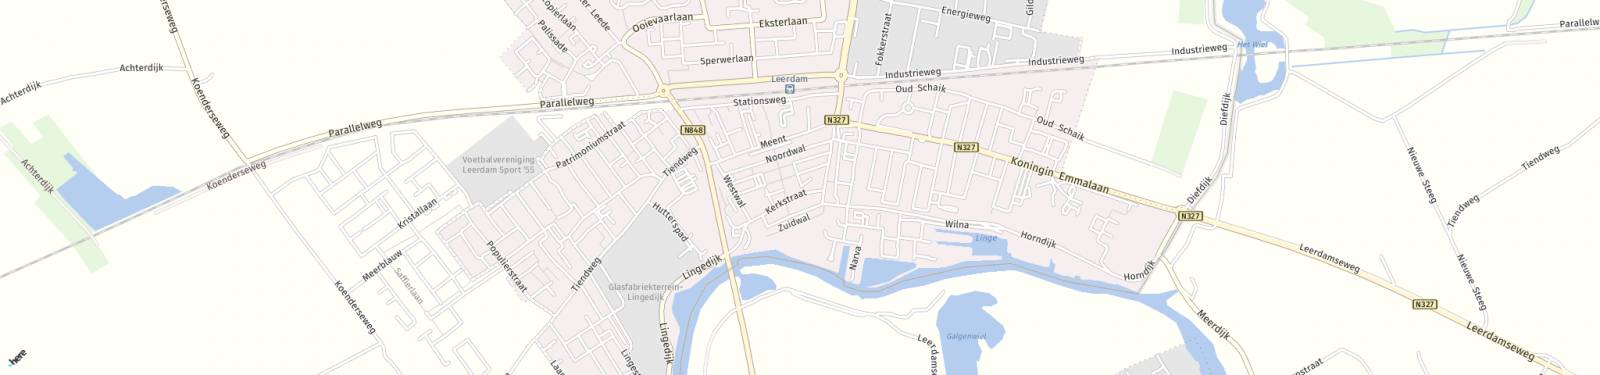 Kaart met locatie Appartement Poorterij